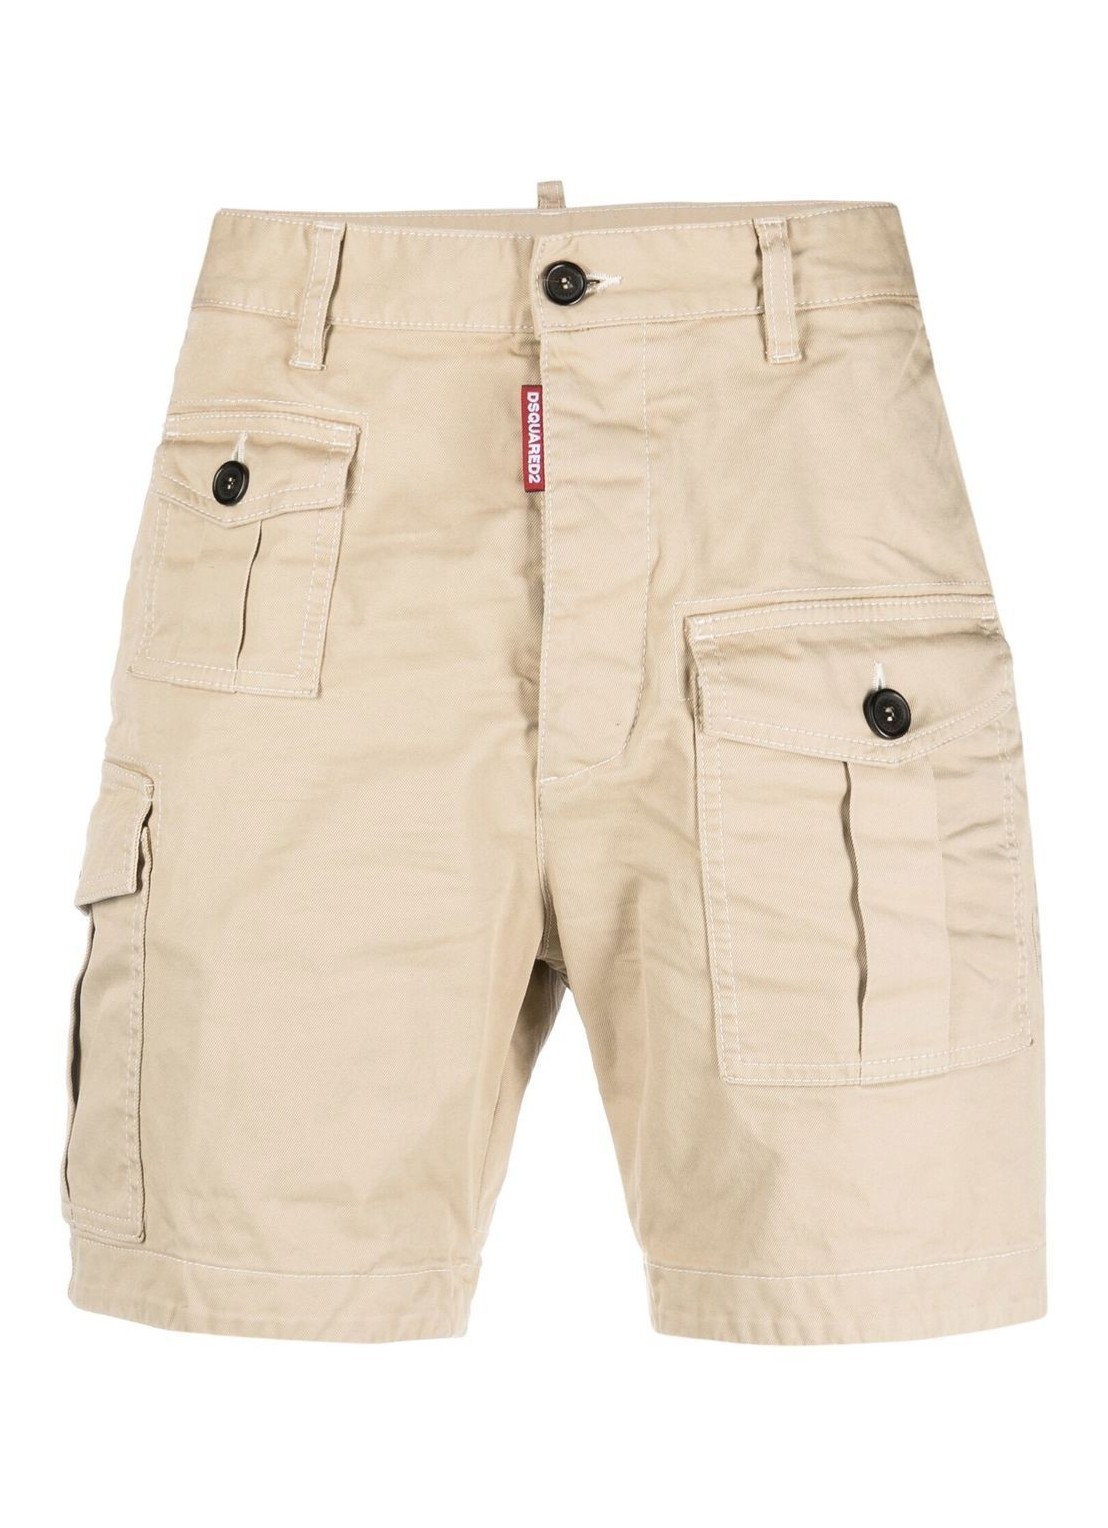 Pantalon corto dsquared sexy cargo shorts - s74mu0780s39021 111 talla 46
 